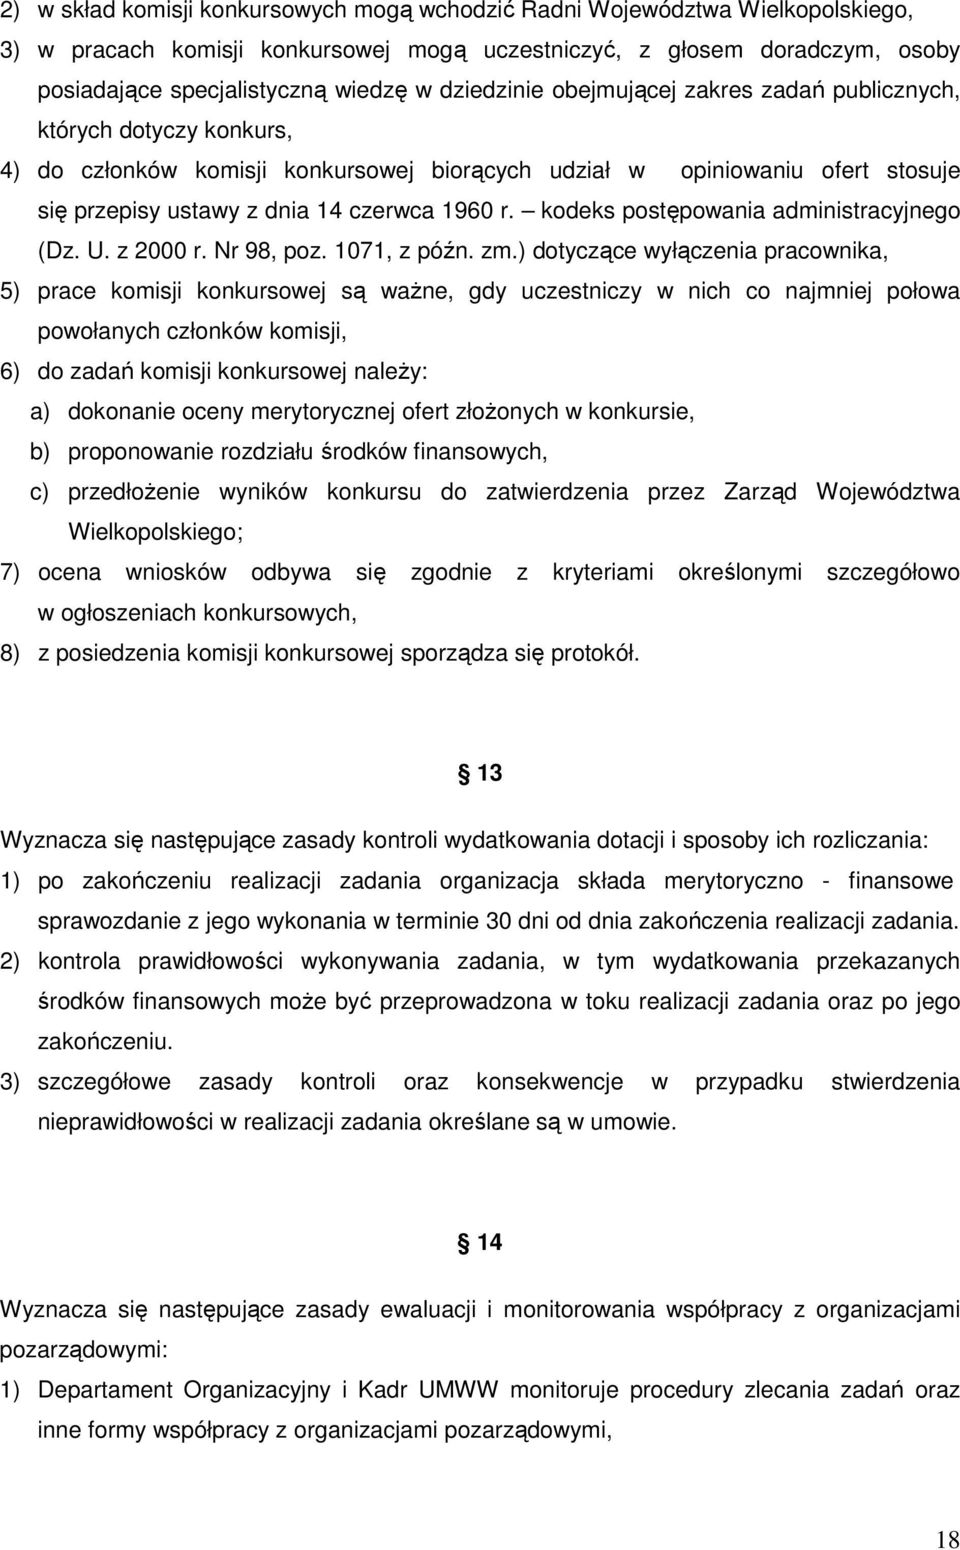 kodeks postępowania administracyjnego (Dz. U. z 2000 r. Nr 98, poz. 1071, z późn. zm.